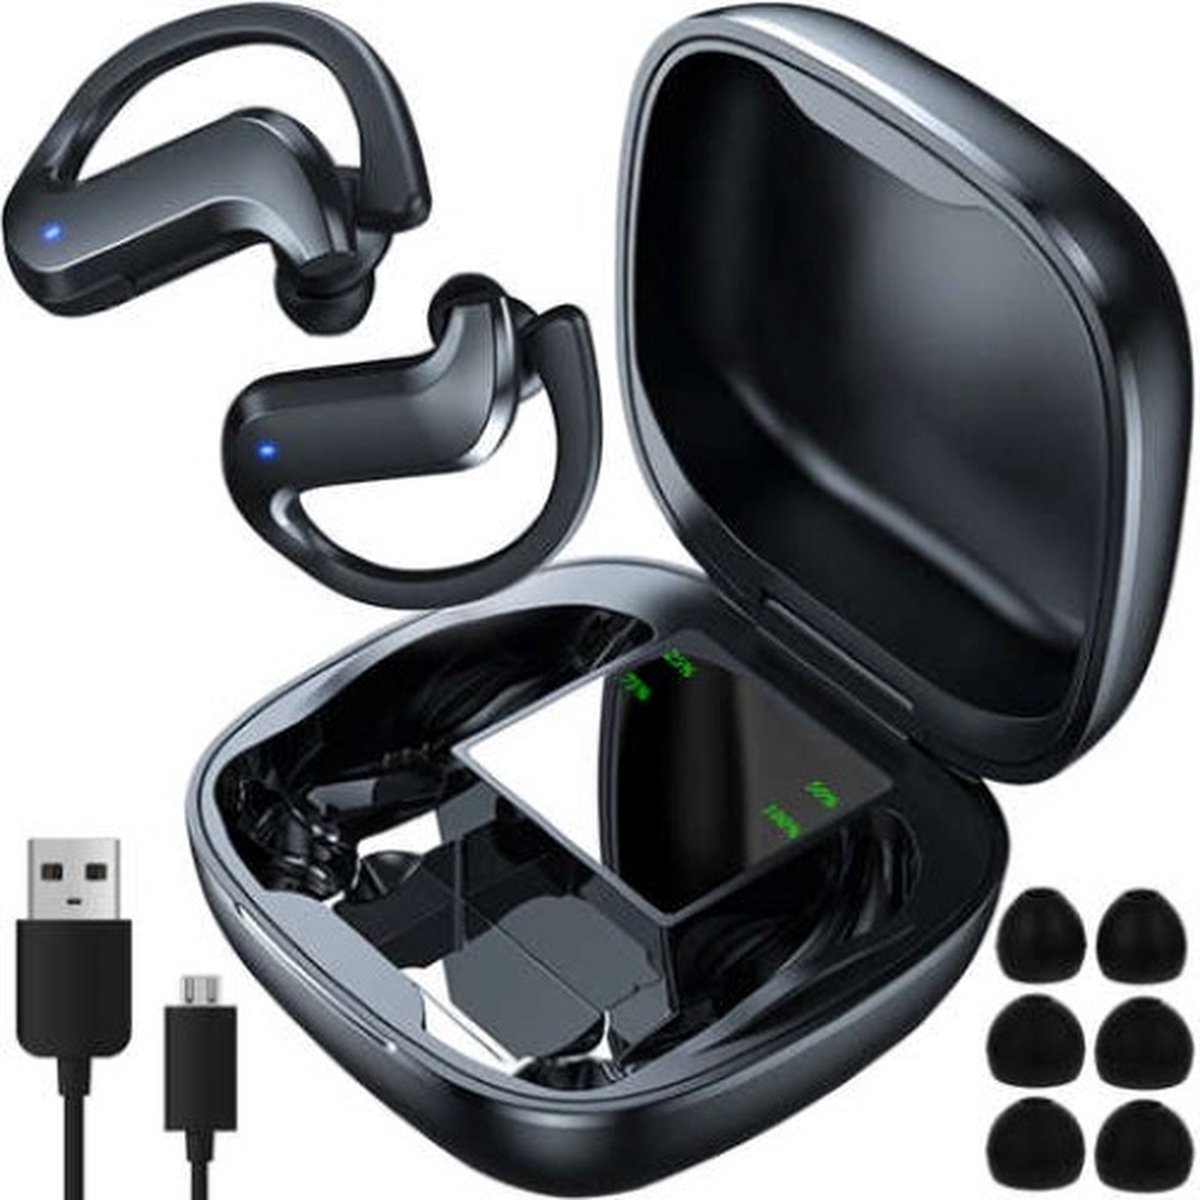 Volledig Draadloze Oordopjes - Draadloze Oordopjes - Bluetooth Oordopjes - Wireless Earbuds - Draadloze Oortjes wirless headphone with powerbank